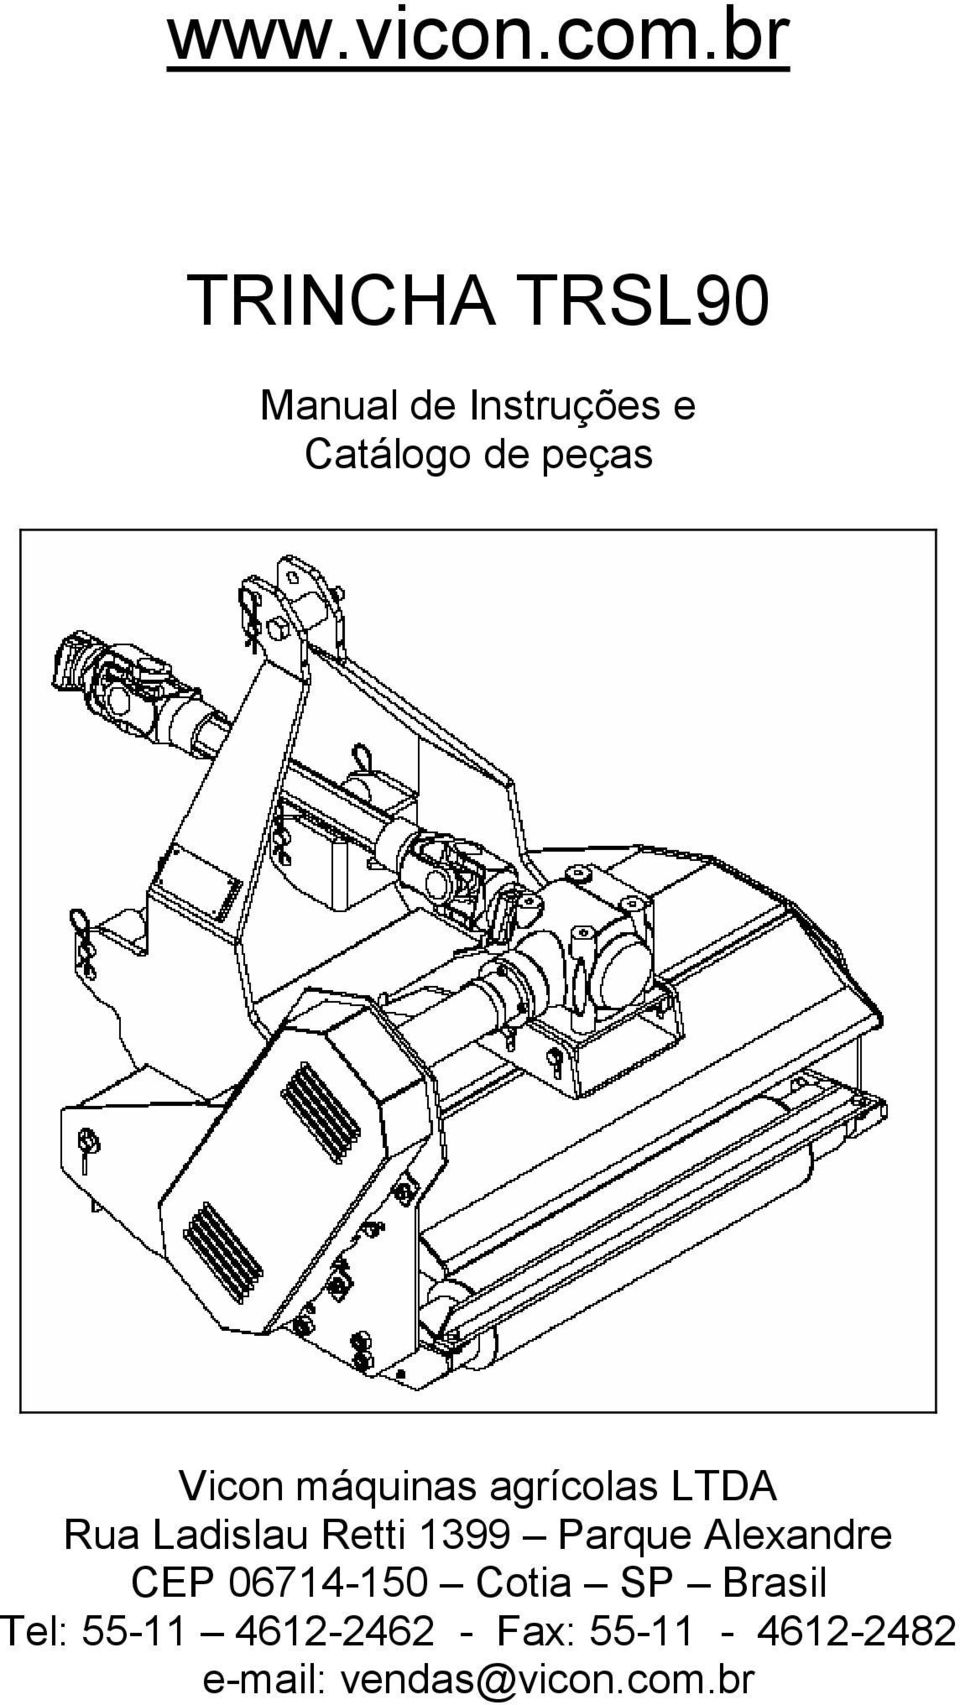 TRINCHA TRSL90 Manual de Instruções e Catálogo de peças - PDF Free Download